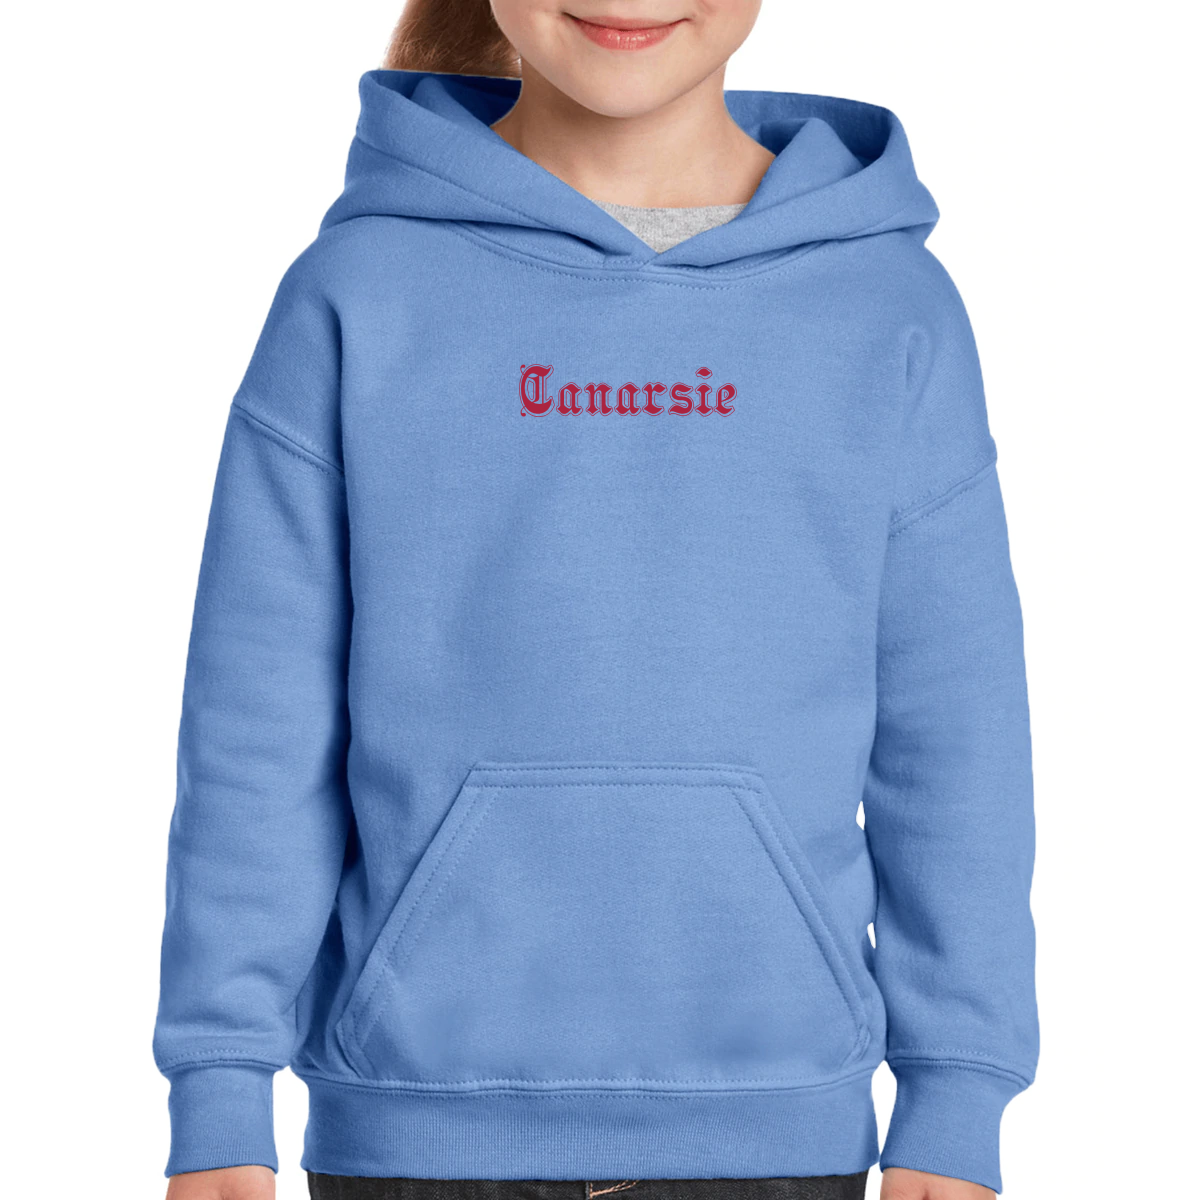 Canarsie Gothic Represent Kids Hoodie | Blue